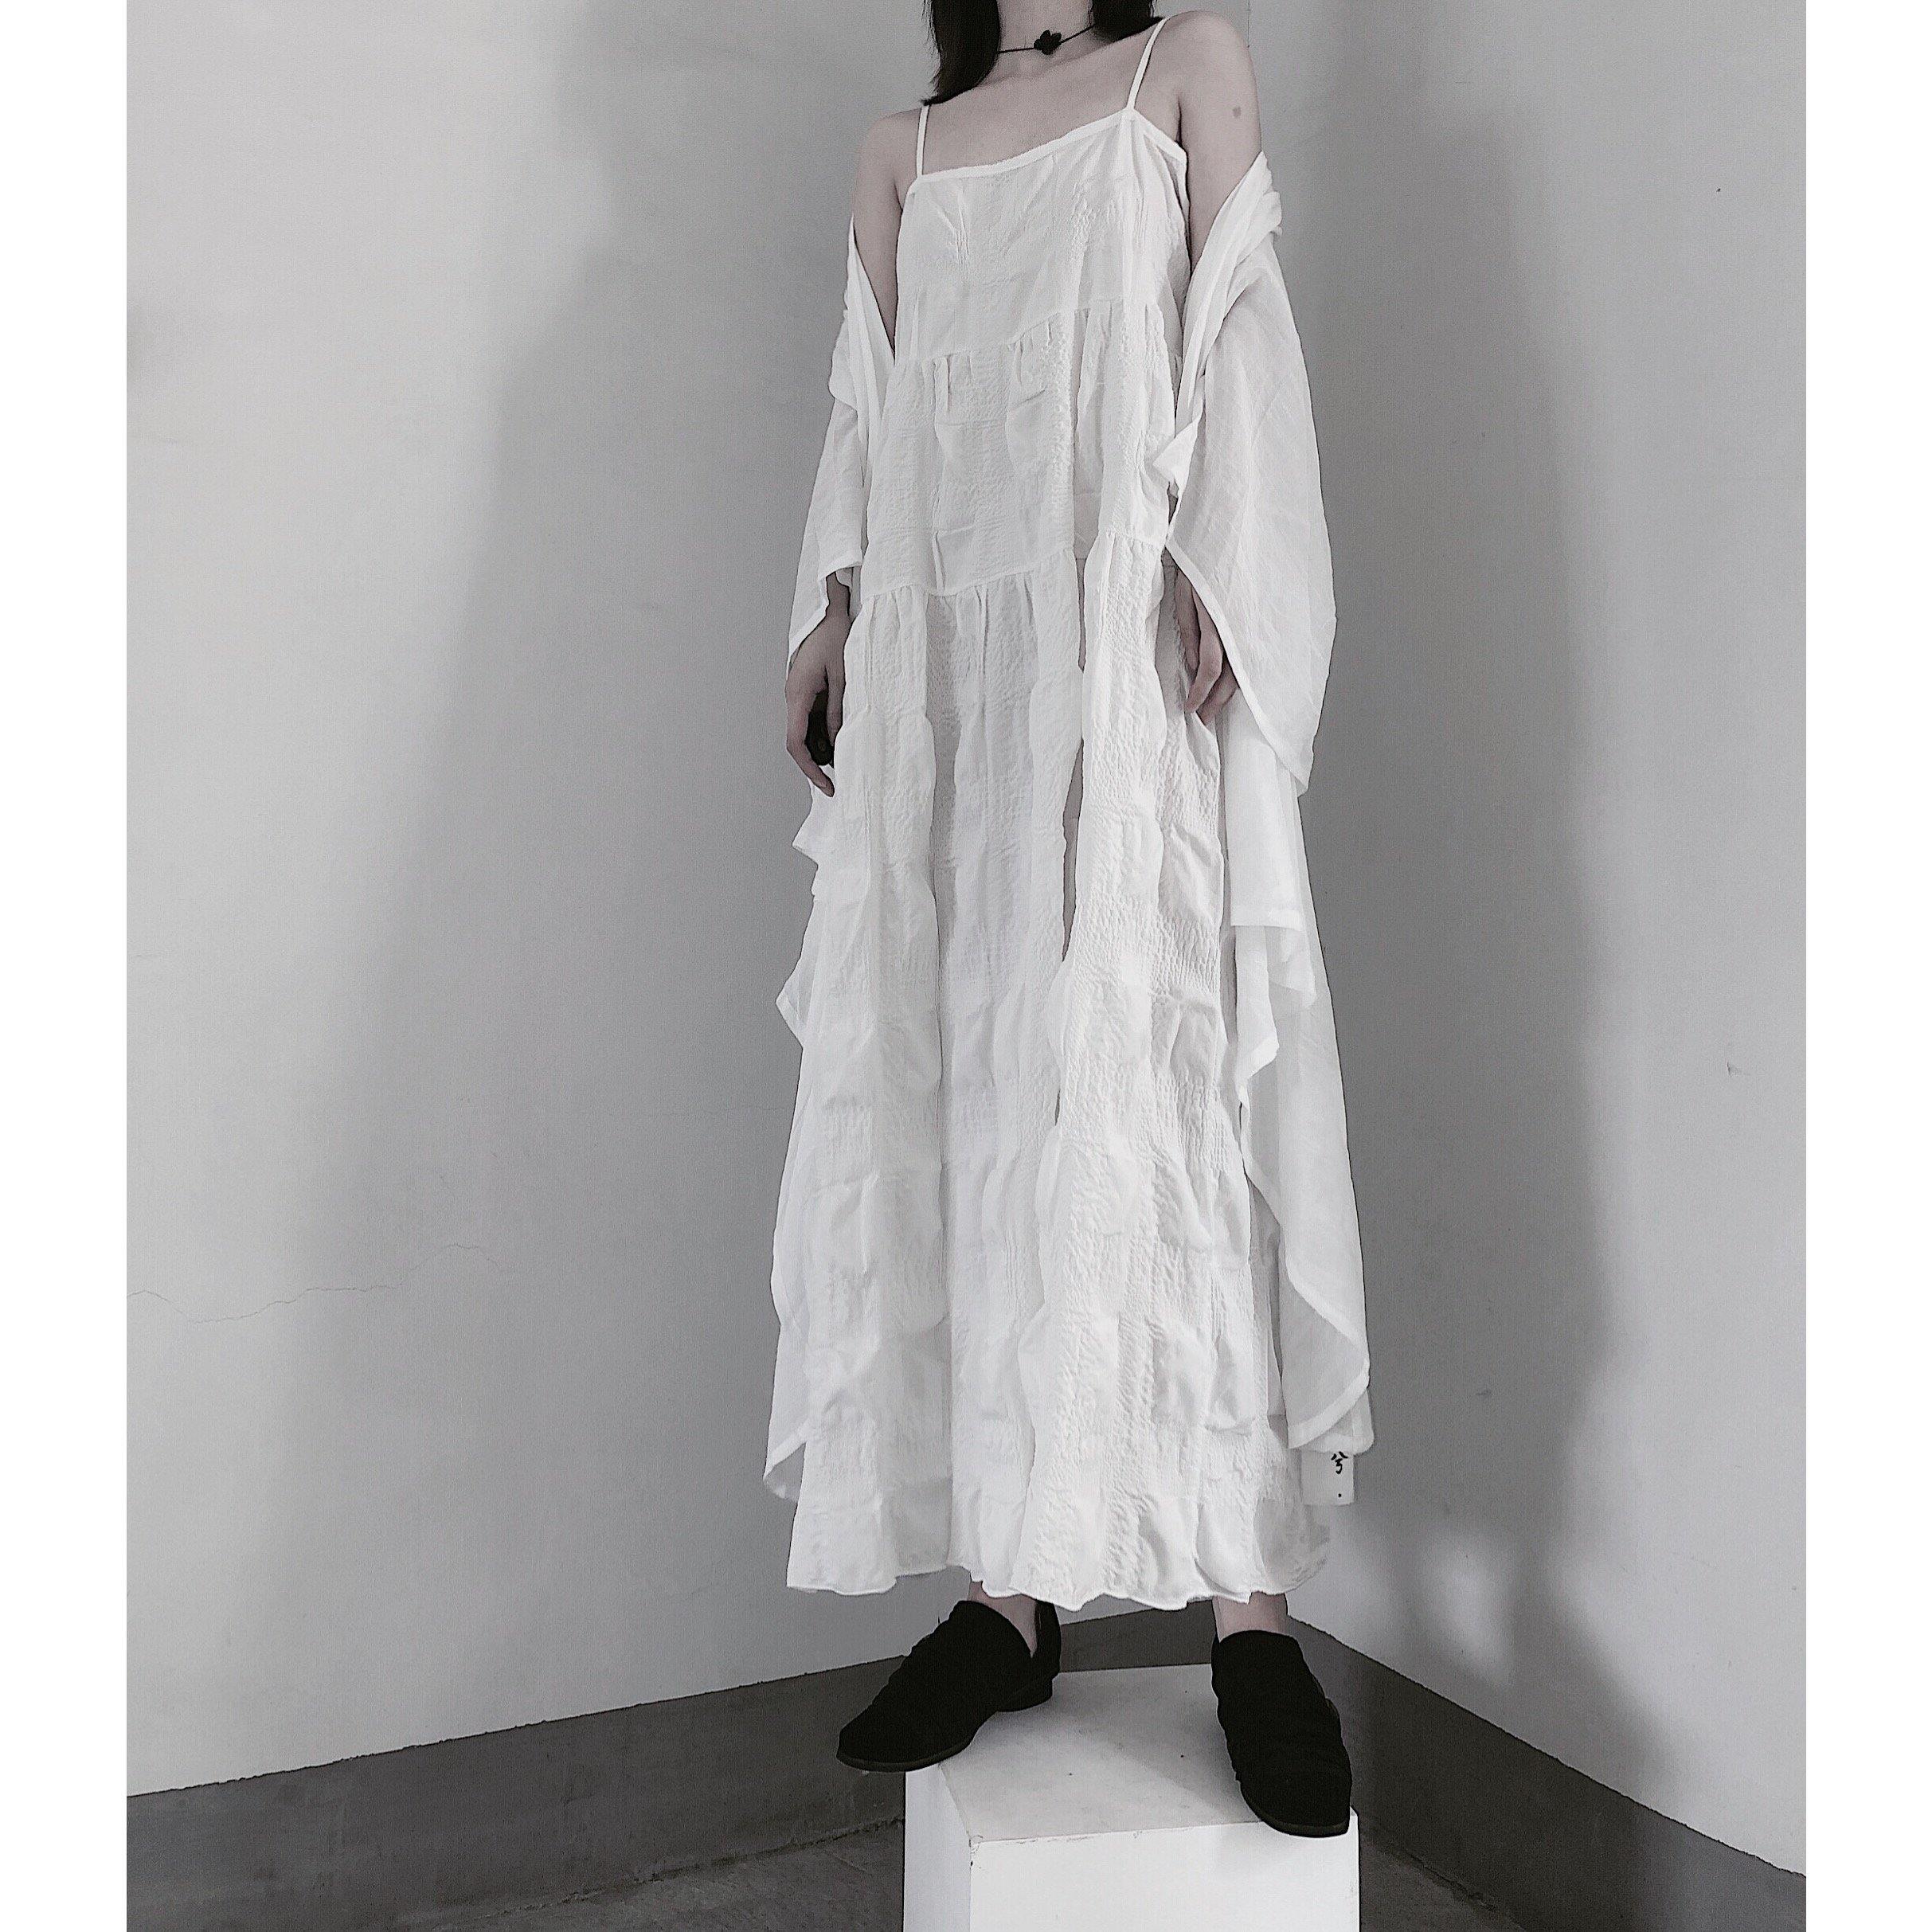 Handmade Spaghetti Strap Wrinkled Dresses Fabrics White Art Dress - Omychic